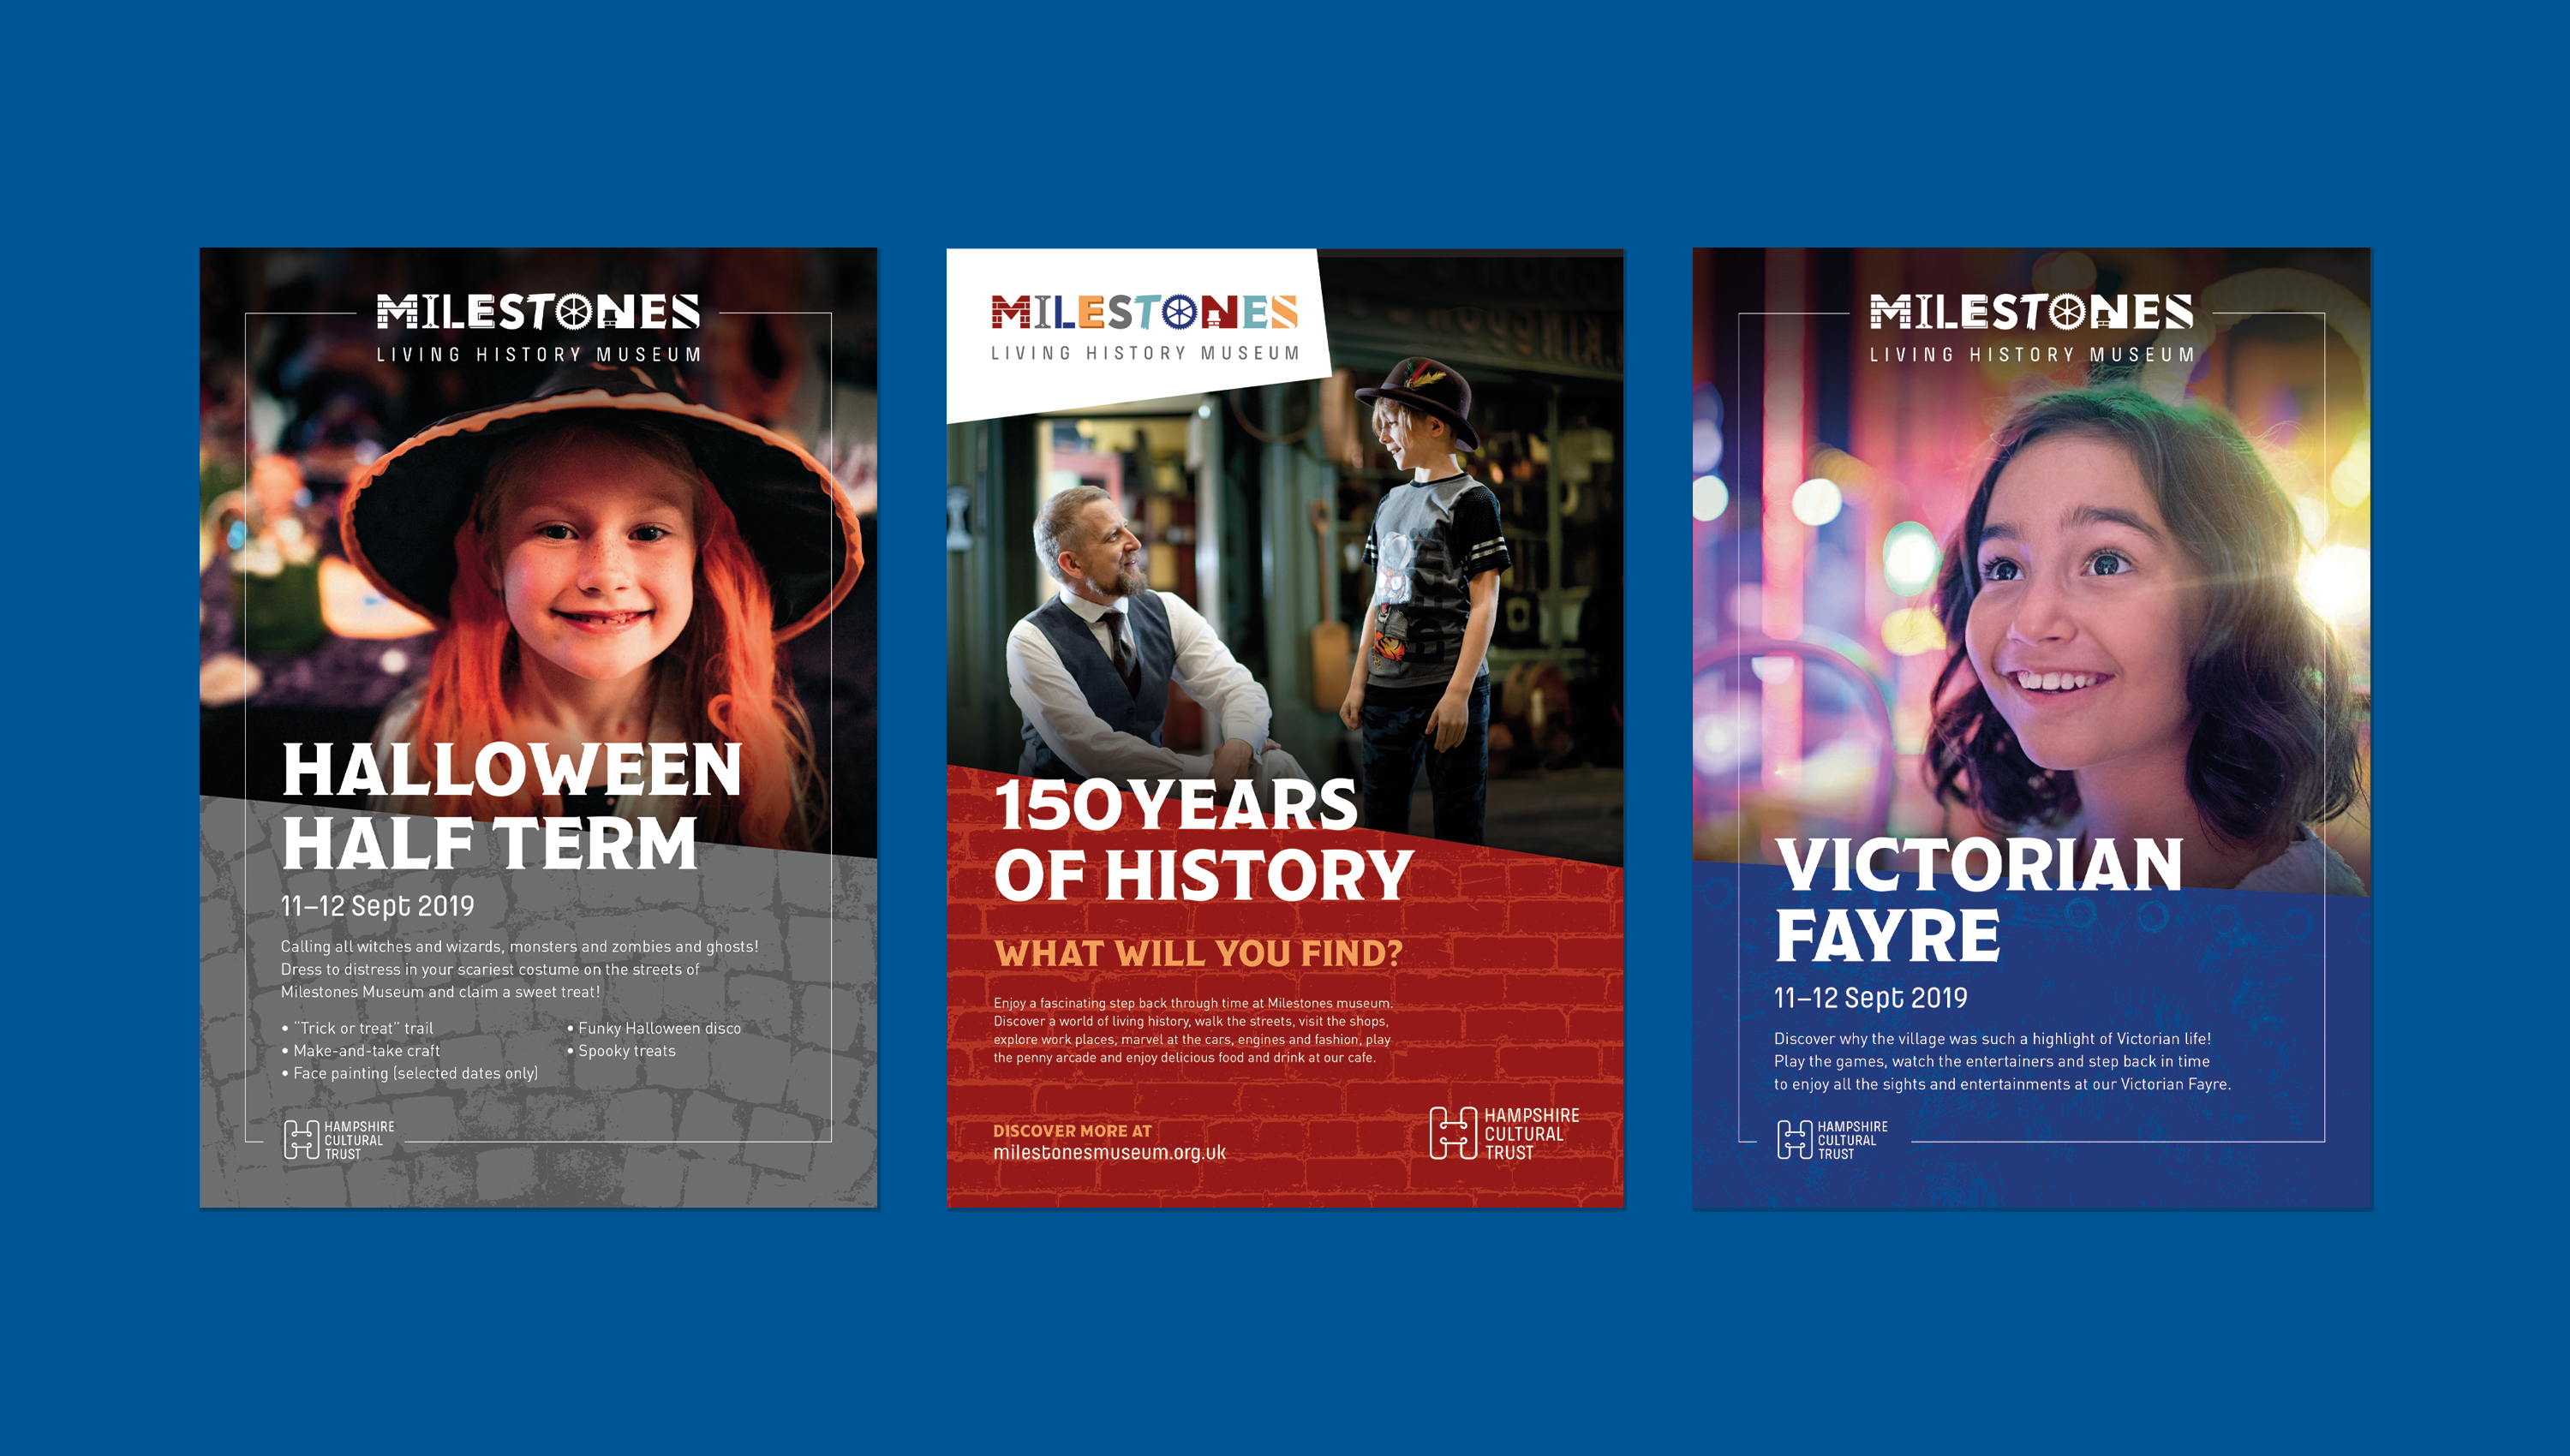 Milestones Museum event posters